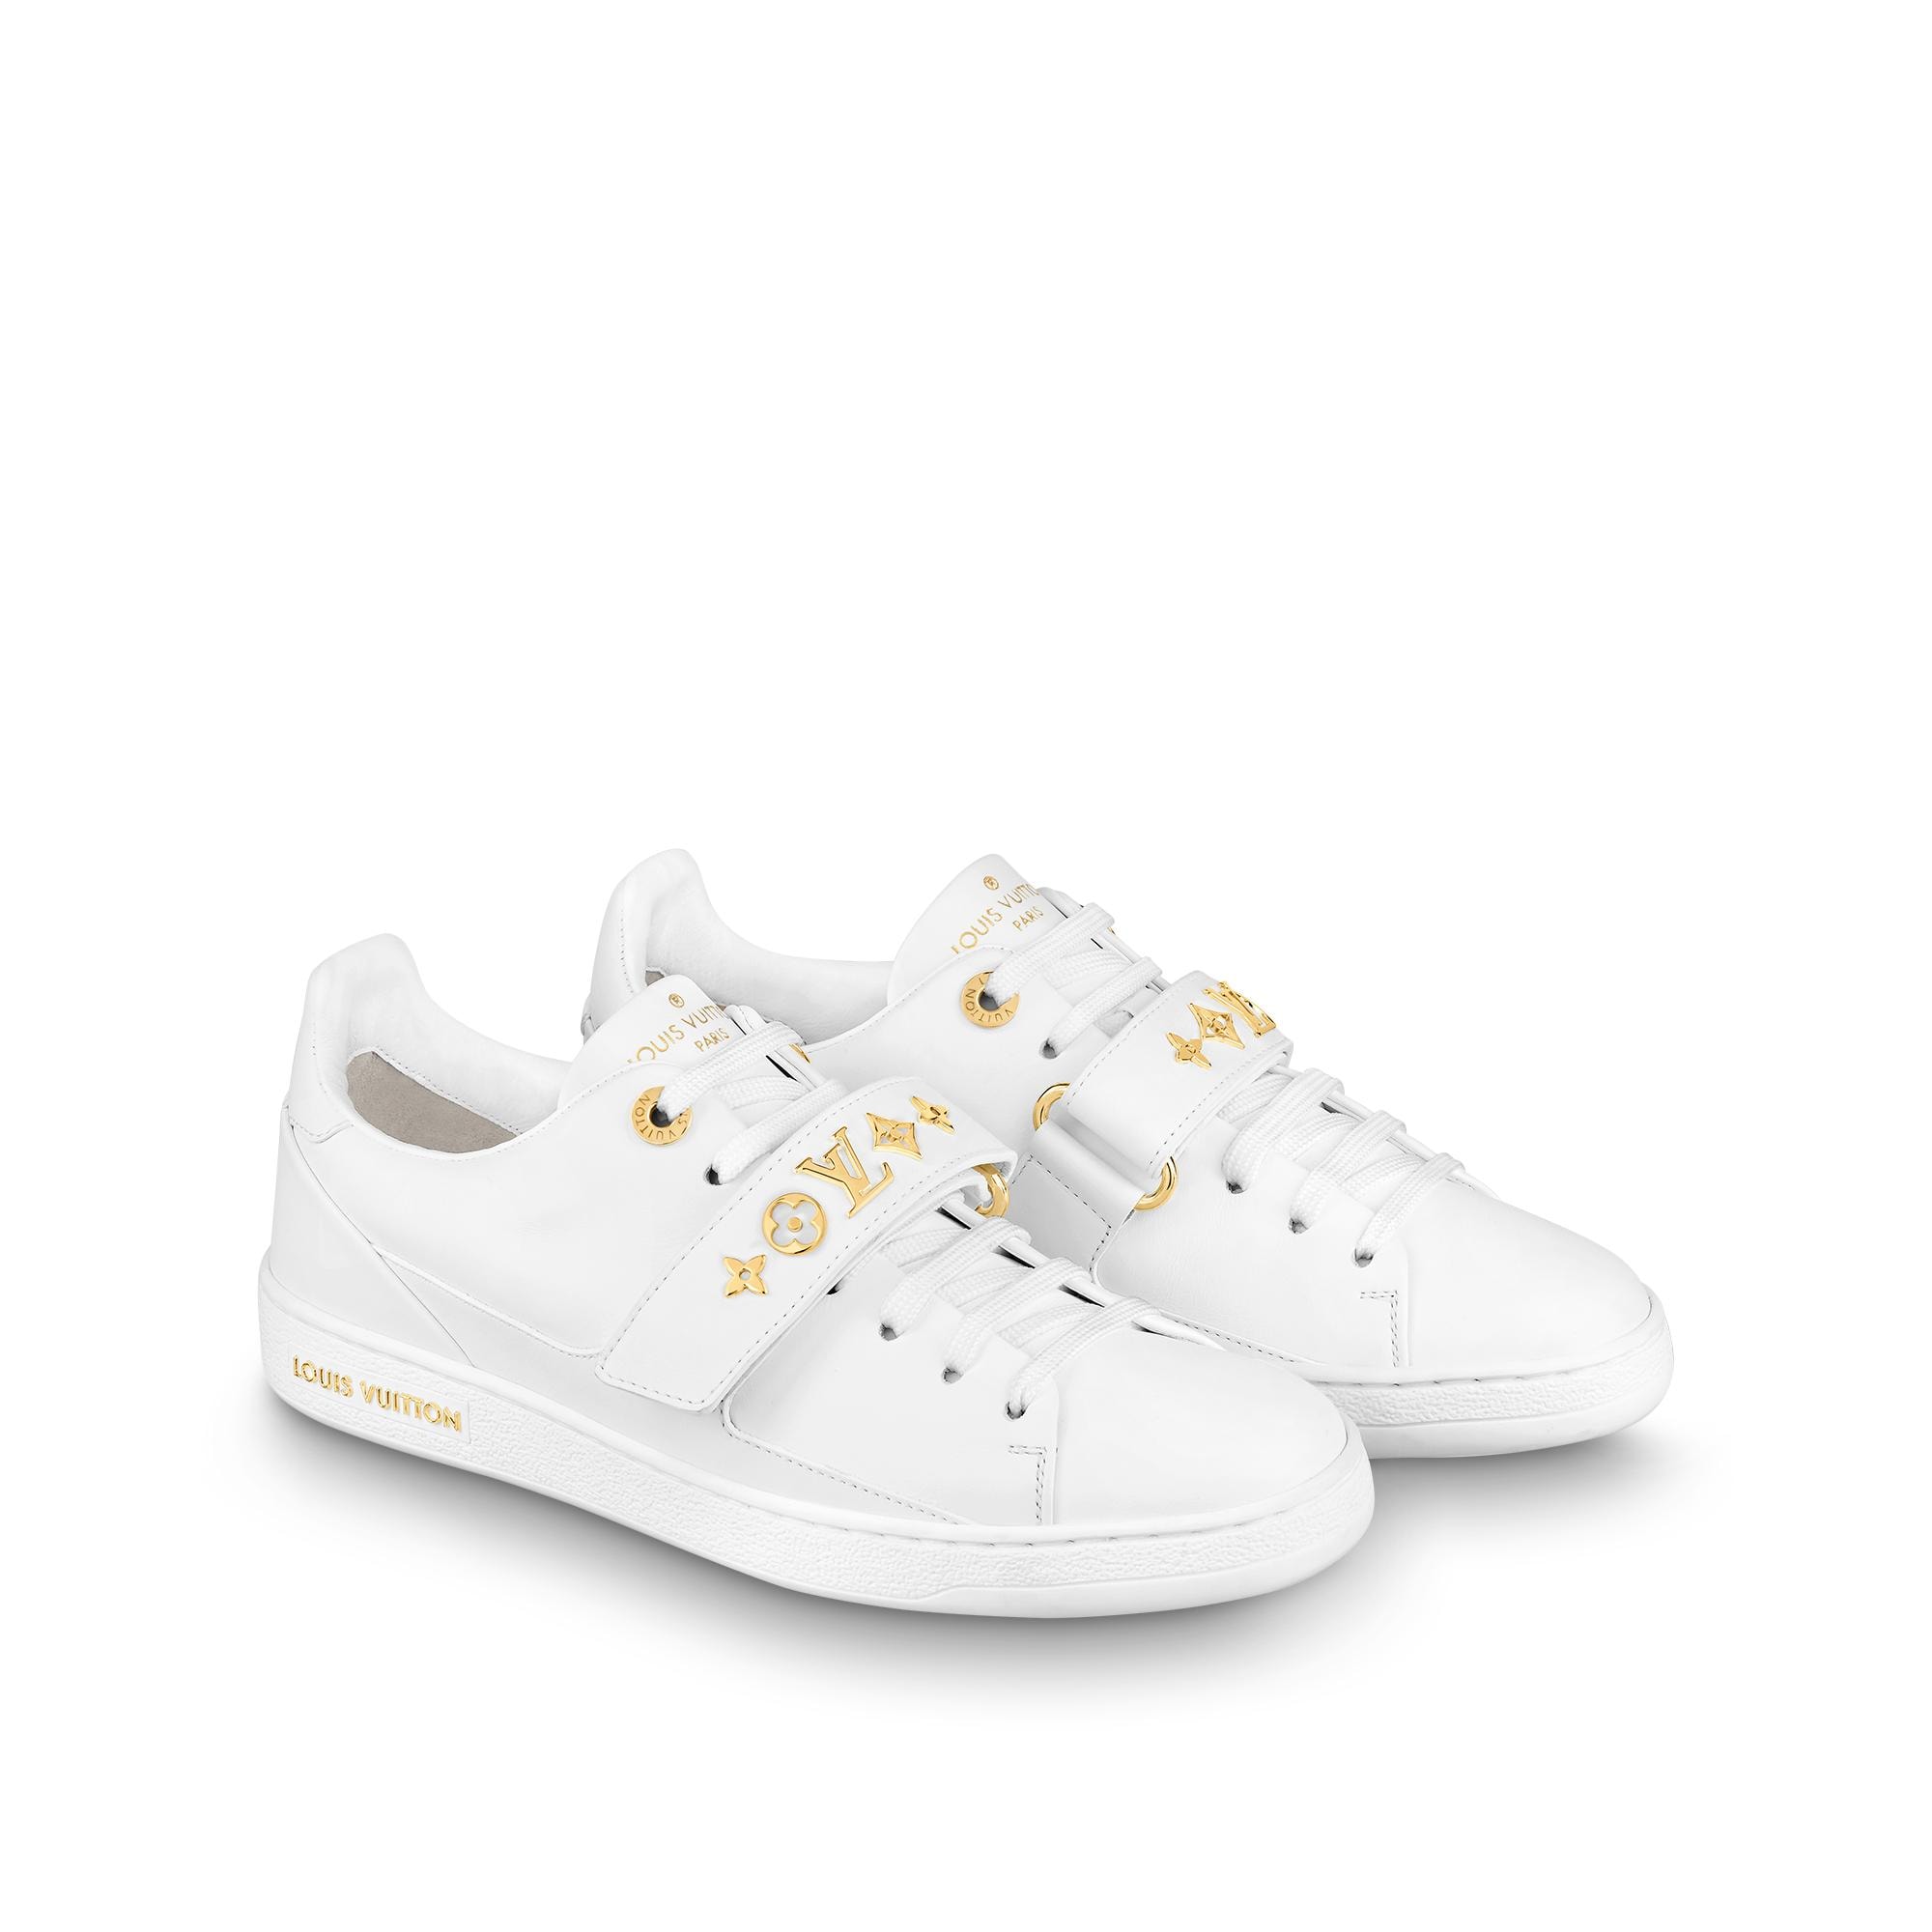 Louis Vuitton FRONTROW Sneaker White. Size 42.0